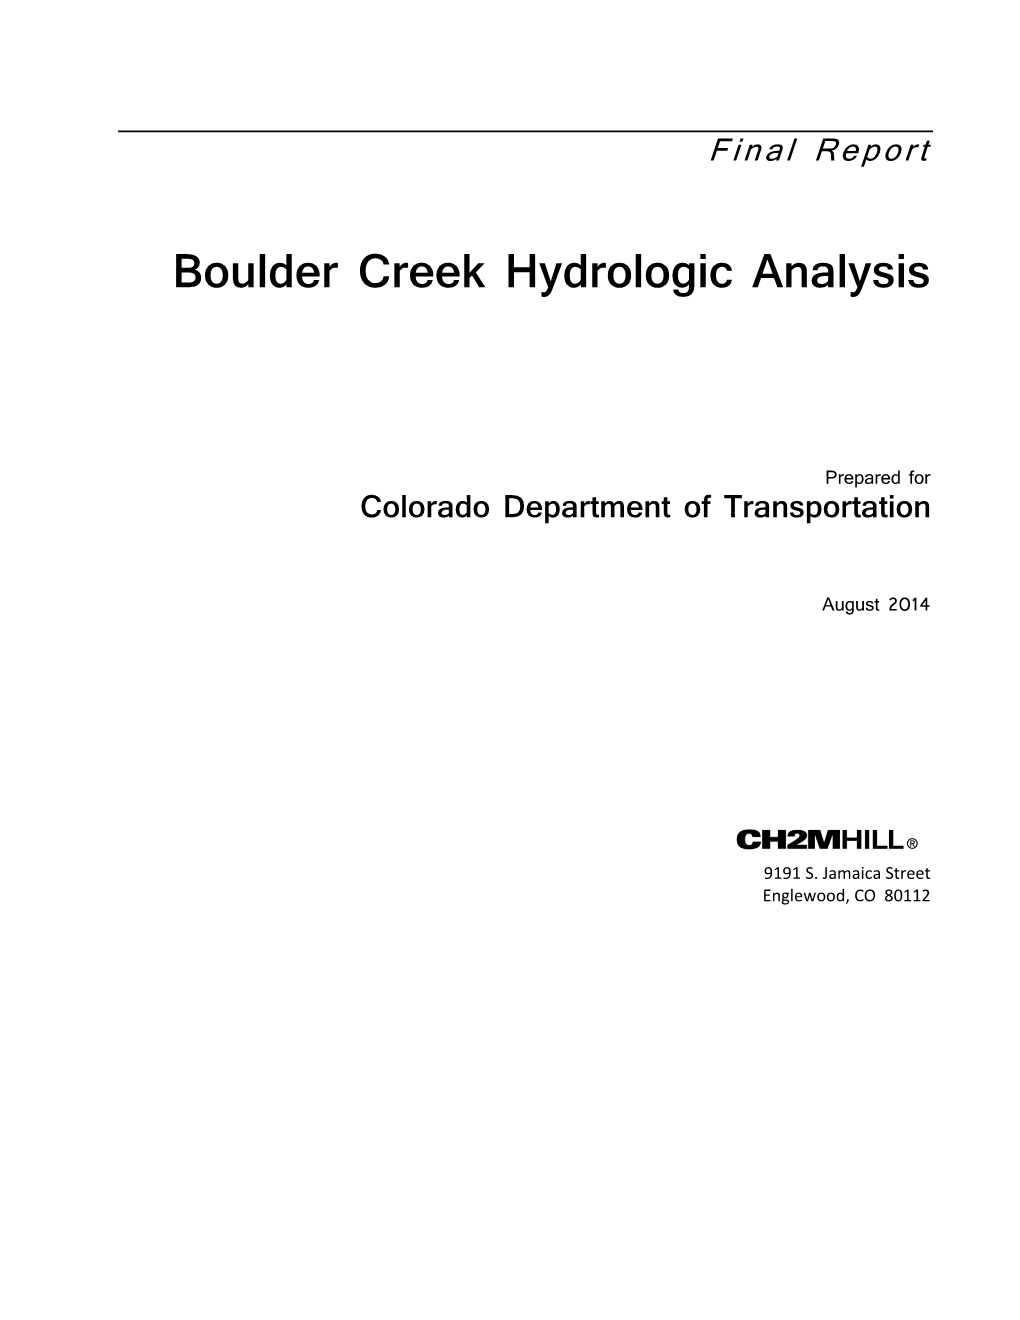 Root Boulder Creek Hydrologic Analysis